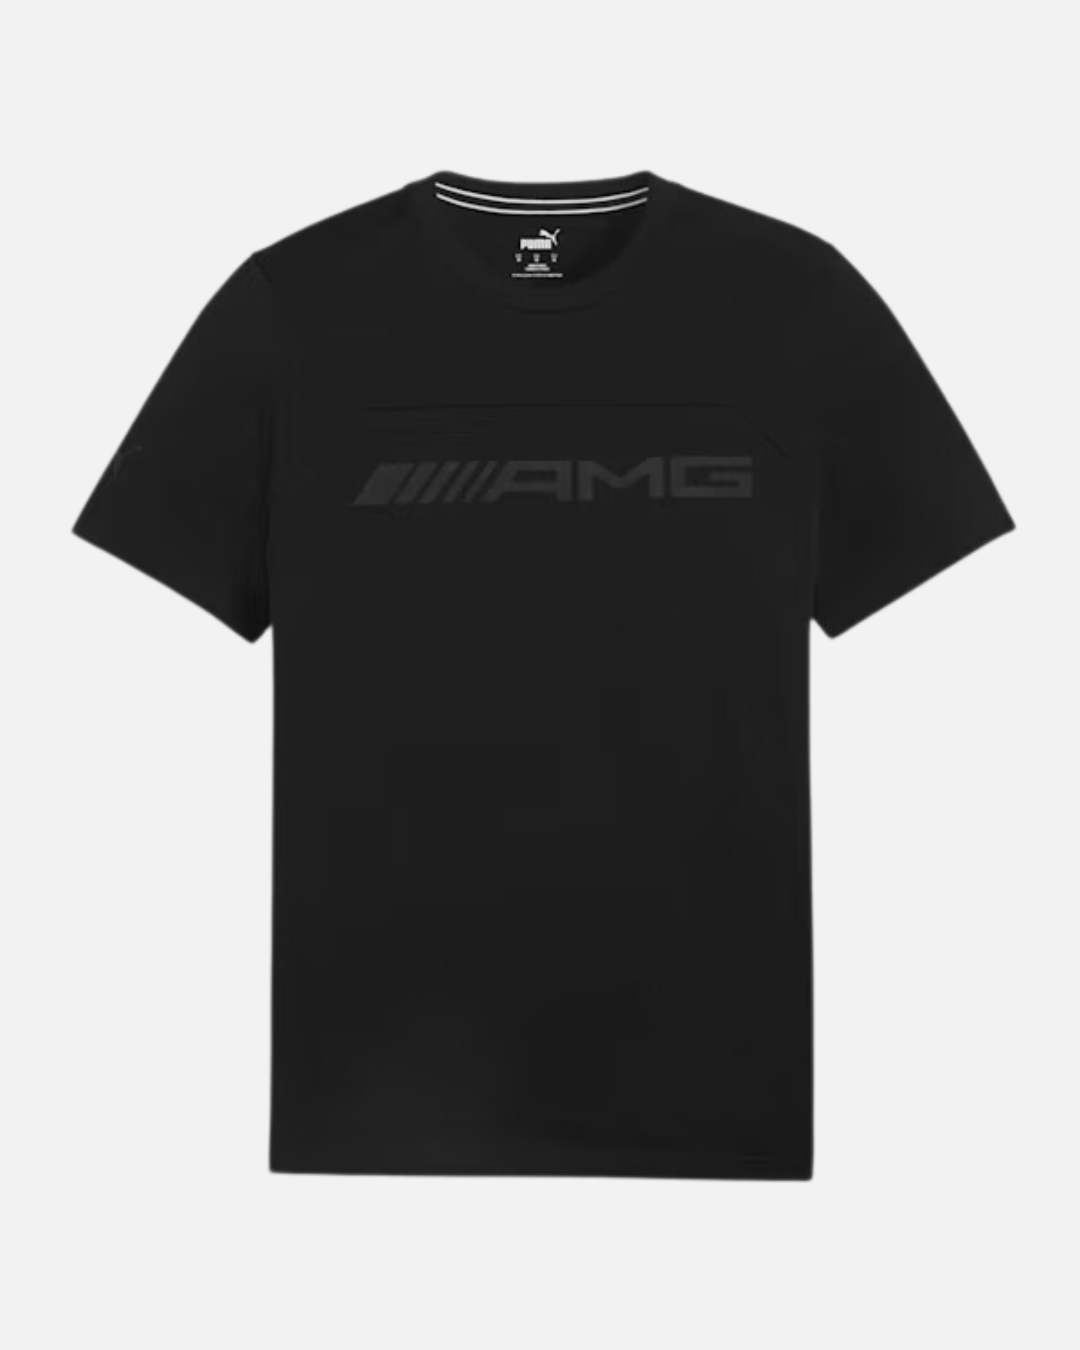 Mercedes-AMG Motorsport T-shirt - Black